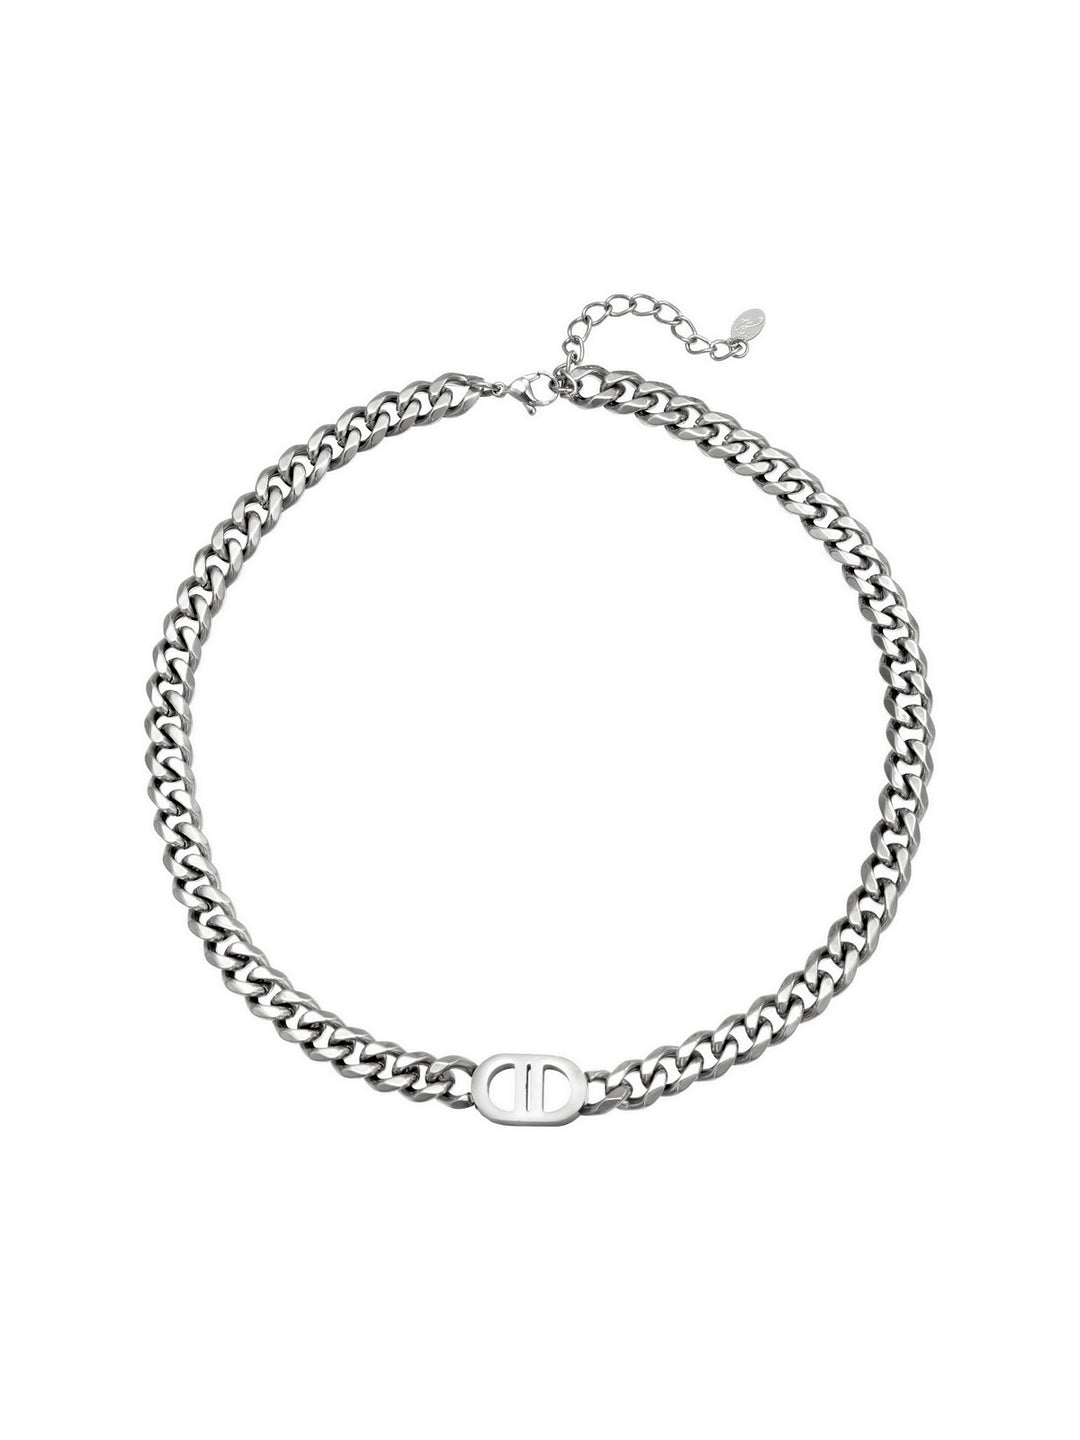 Pretty Chain Necklace Silver